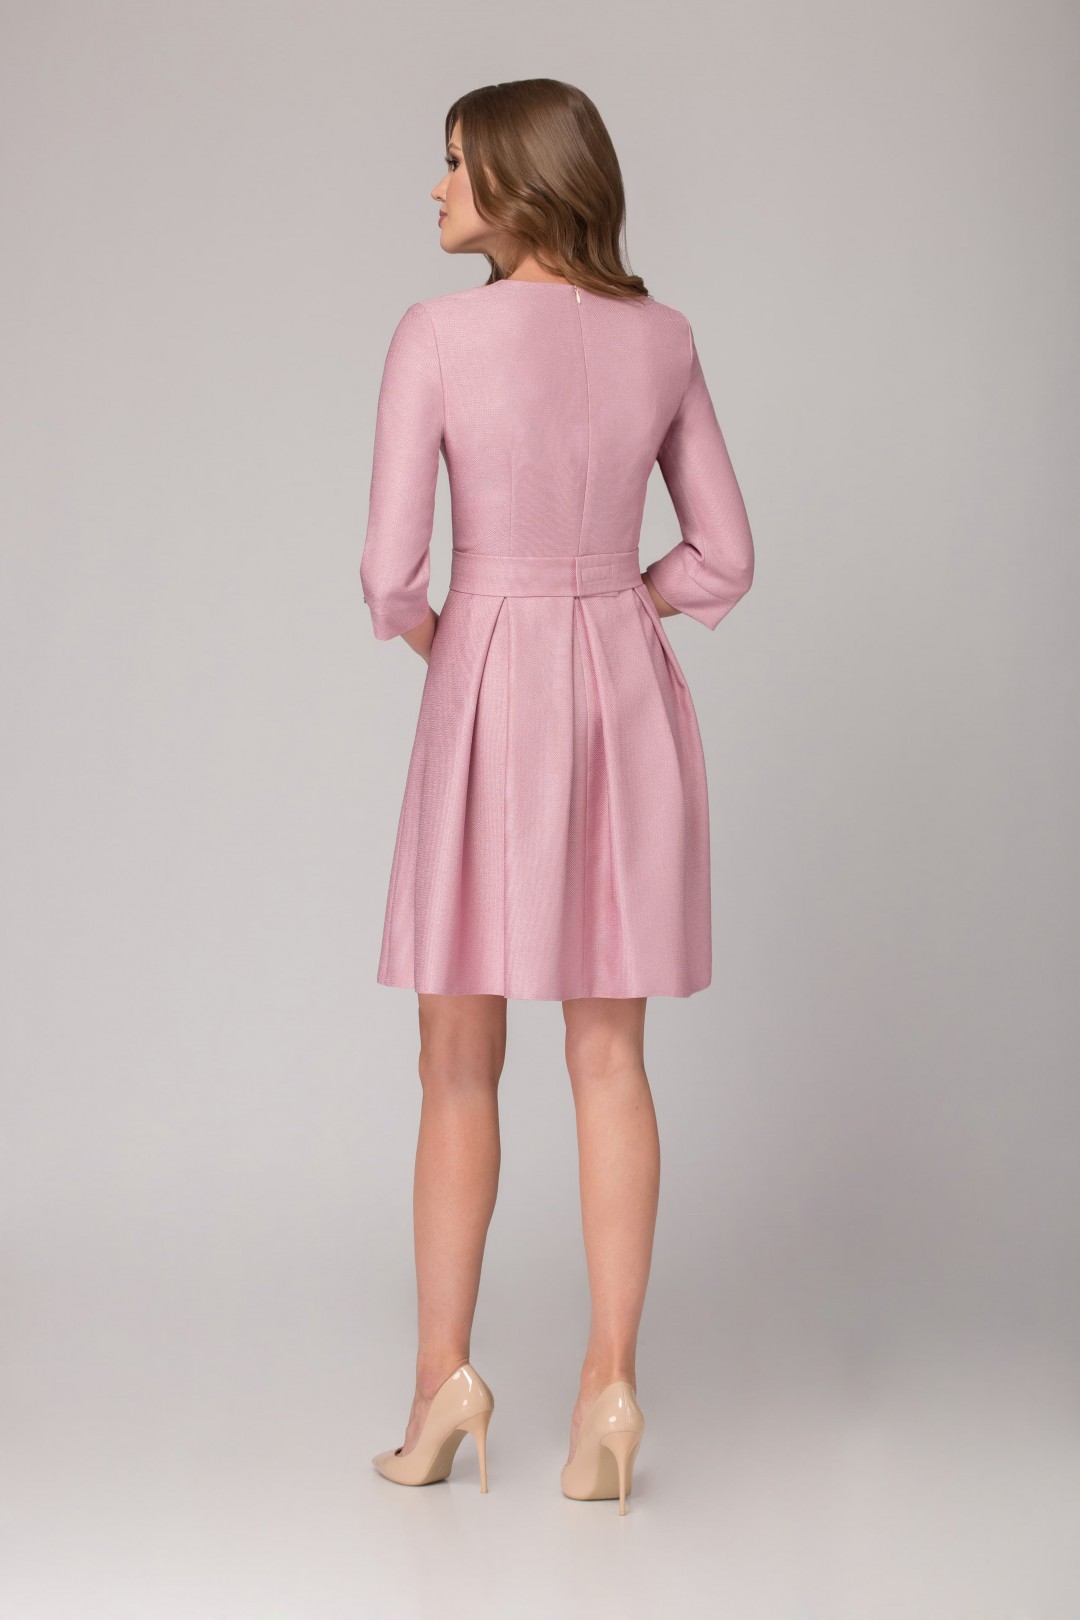 Платье Светлана-Стиль 1085 розовый